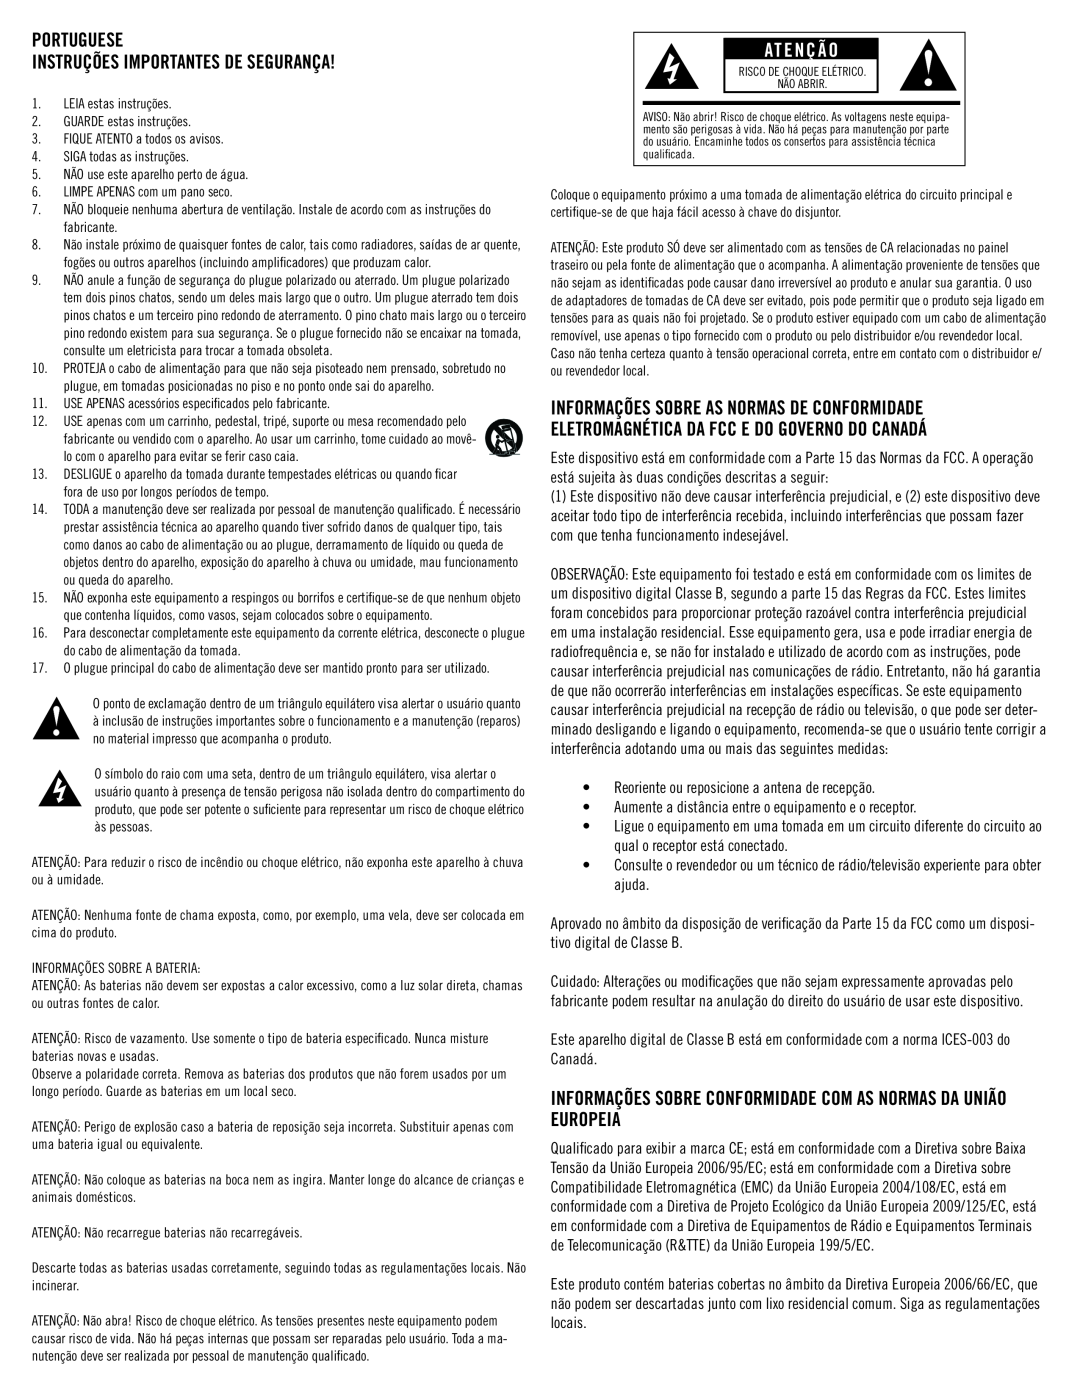 Klipsch SB 1 owner manual PORTUGuESE INSTRUÇÕES importantes de segurança, Atenção 